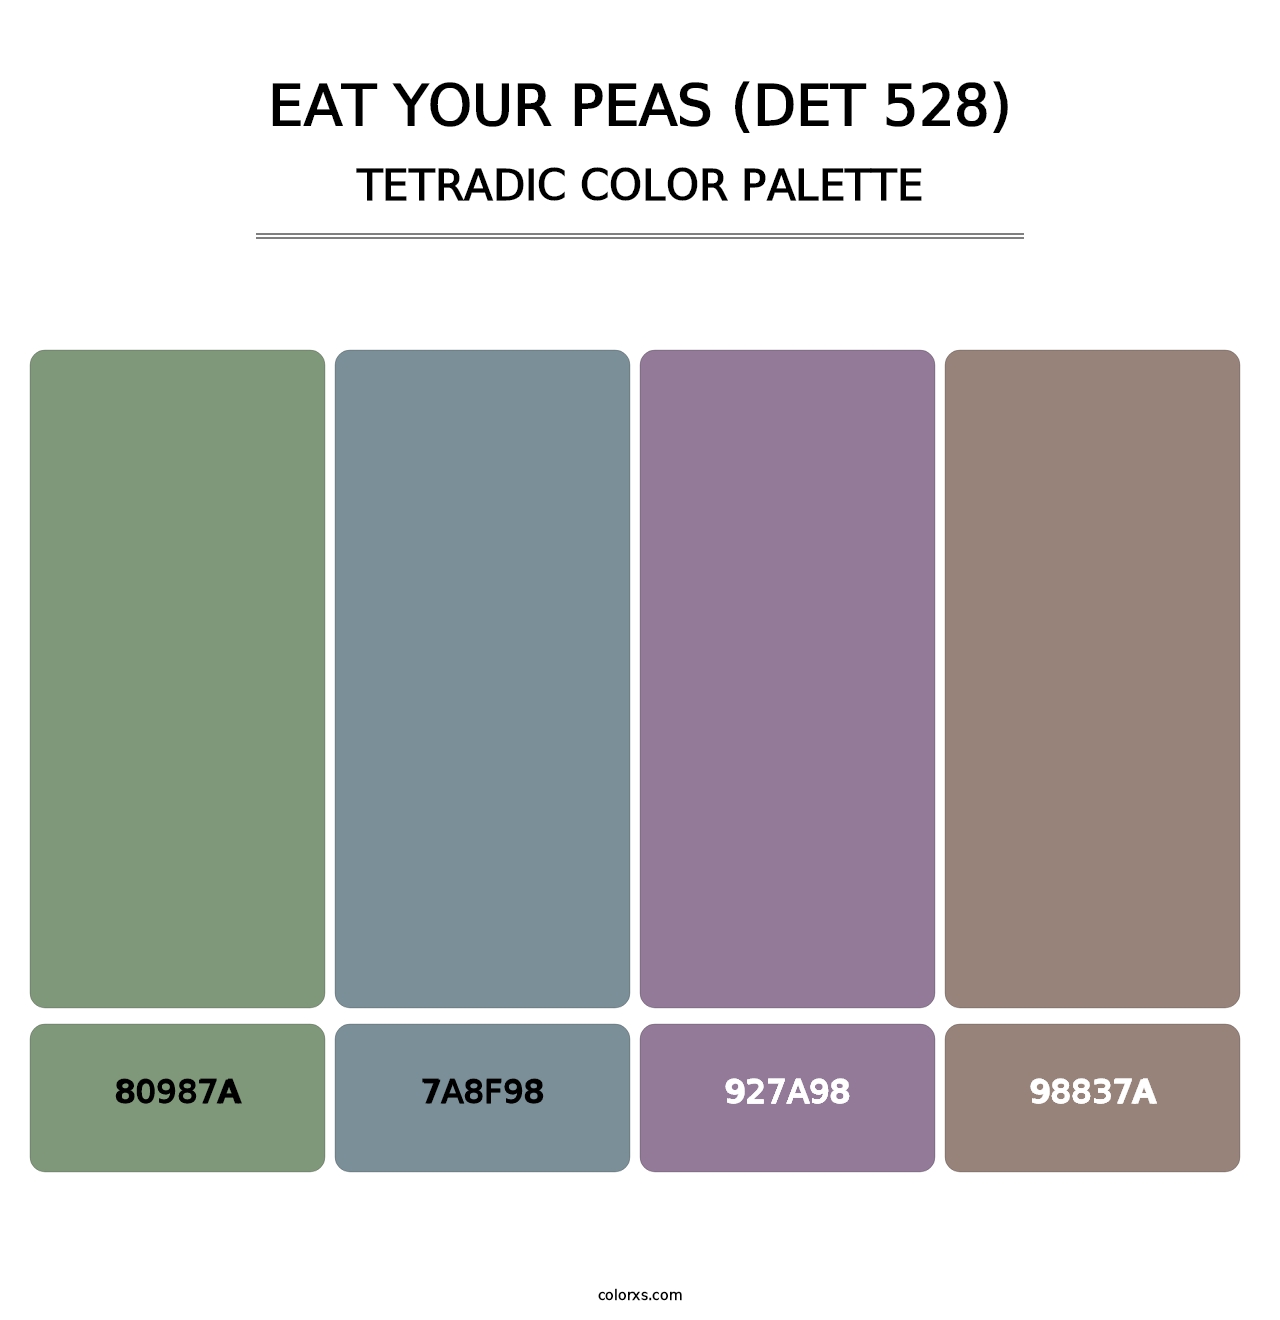 Eat Your Peas (DET 528) - Tetradic Color Palette